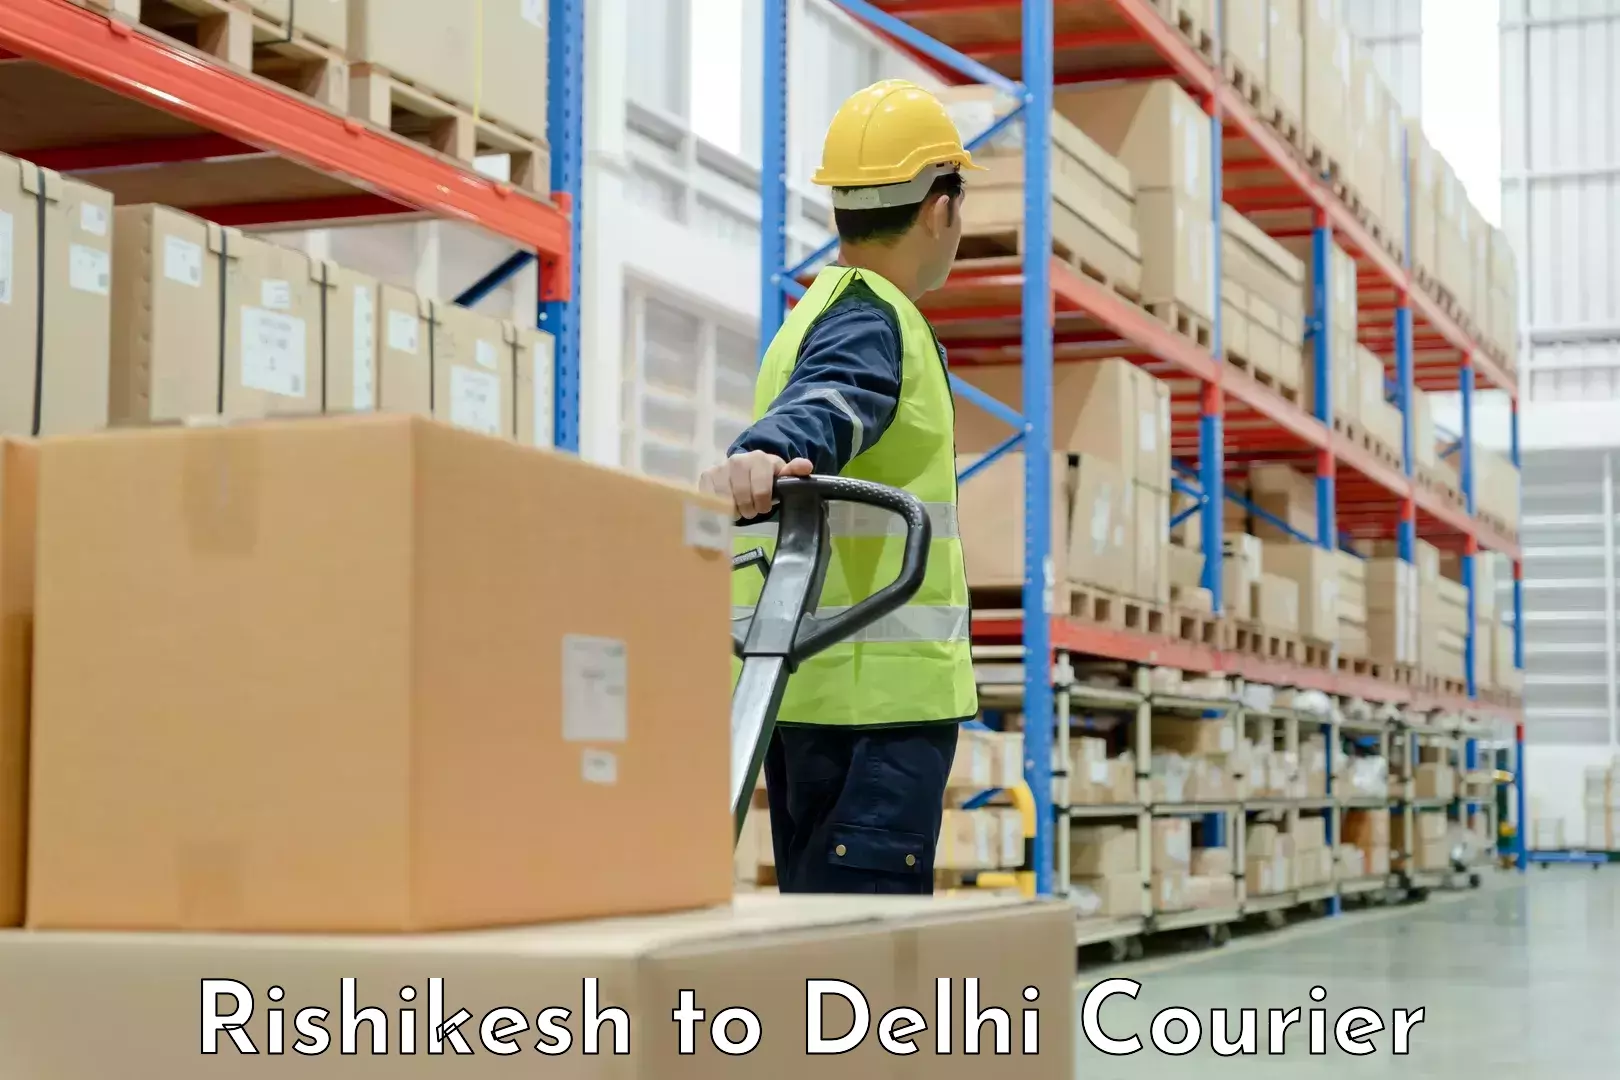 Furniture moving experts Rishikesh to Jawaharlal Nehru University New Delhi